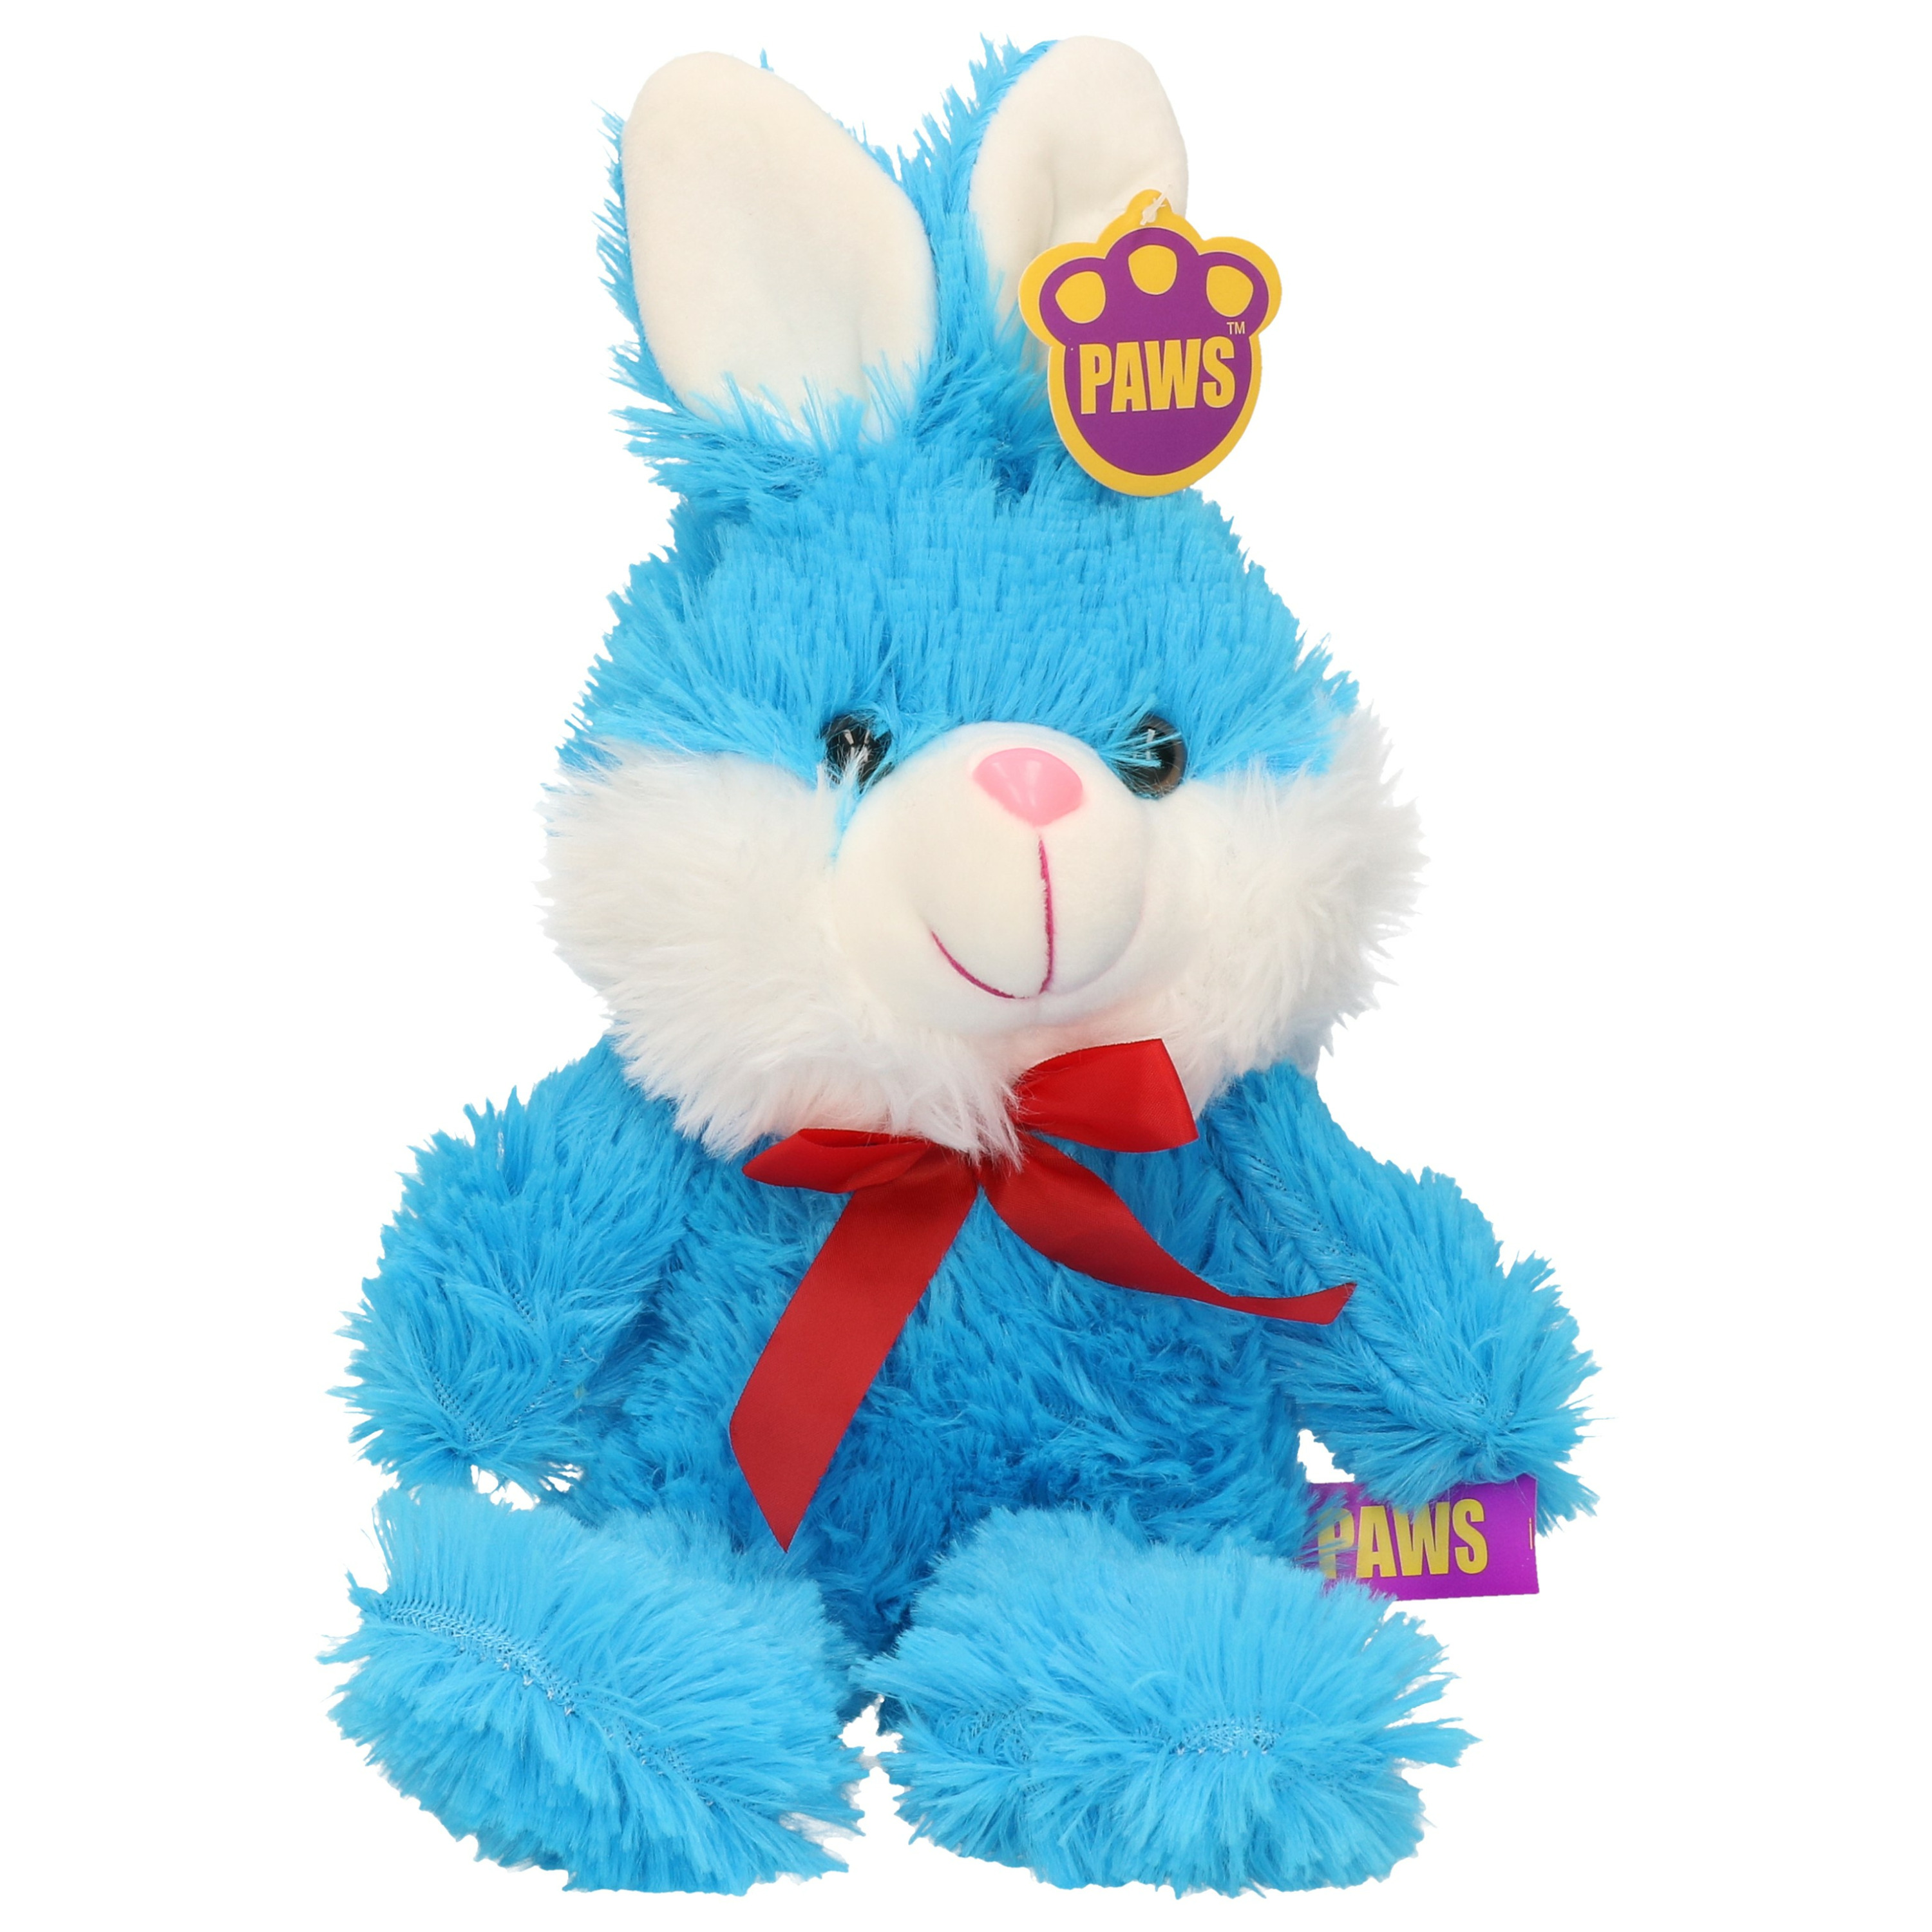 Paashaas-haas-konijn knuffel dier zachte pluche blauw cadeau 32 cm met strikje